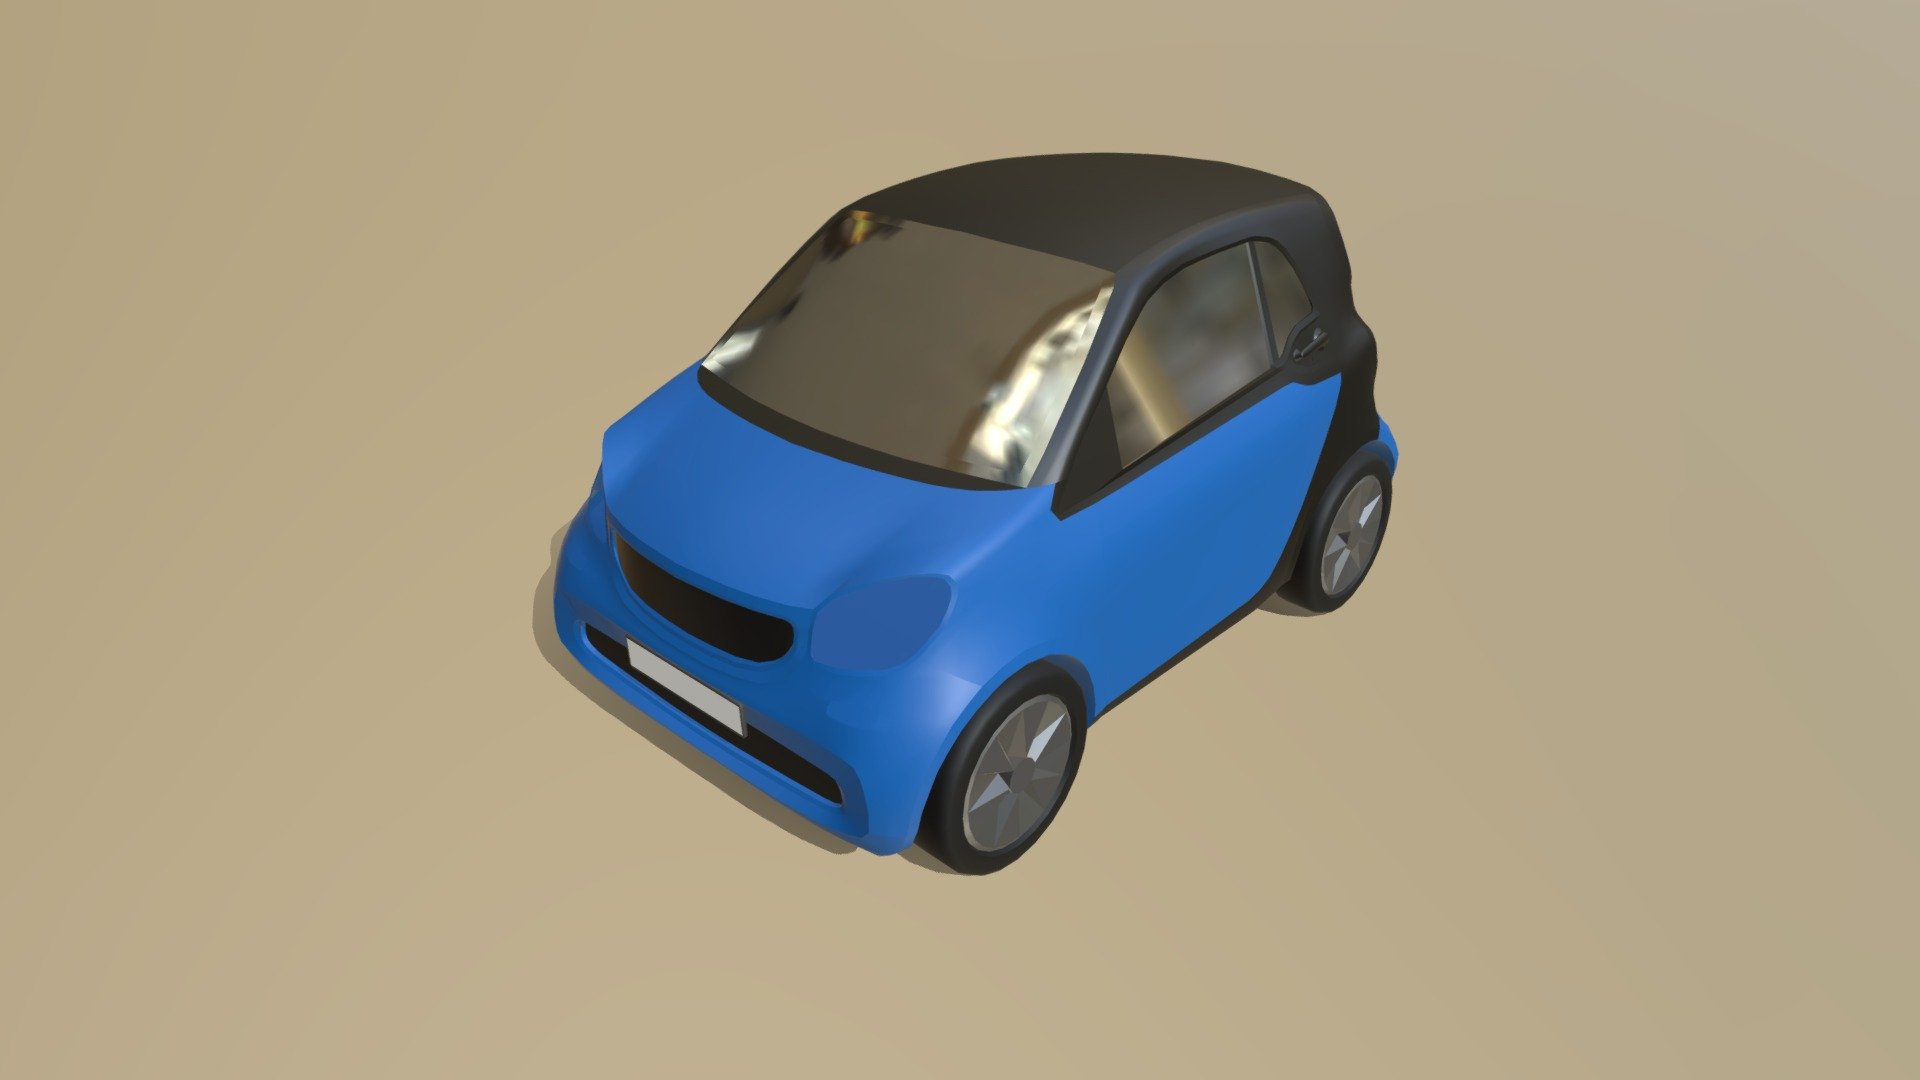 Fahrzeug typ - Microcar work in progress (4)



Aus unserem VIS-All Fahrzeugmodul 2.

Verwendete 3D-Modellierungssoftware Blender.

Das Modell wurde erstellt von 3DHaupt 3d model